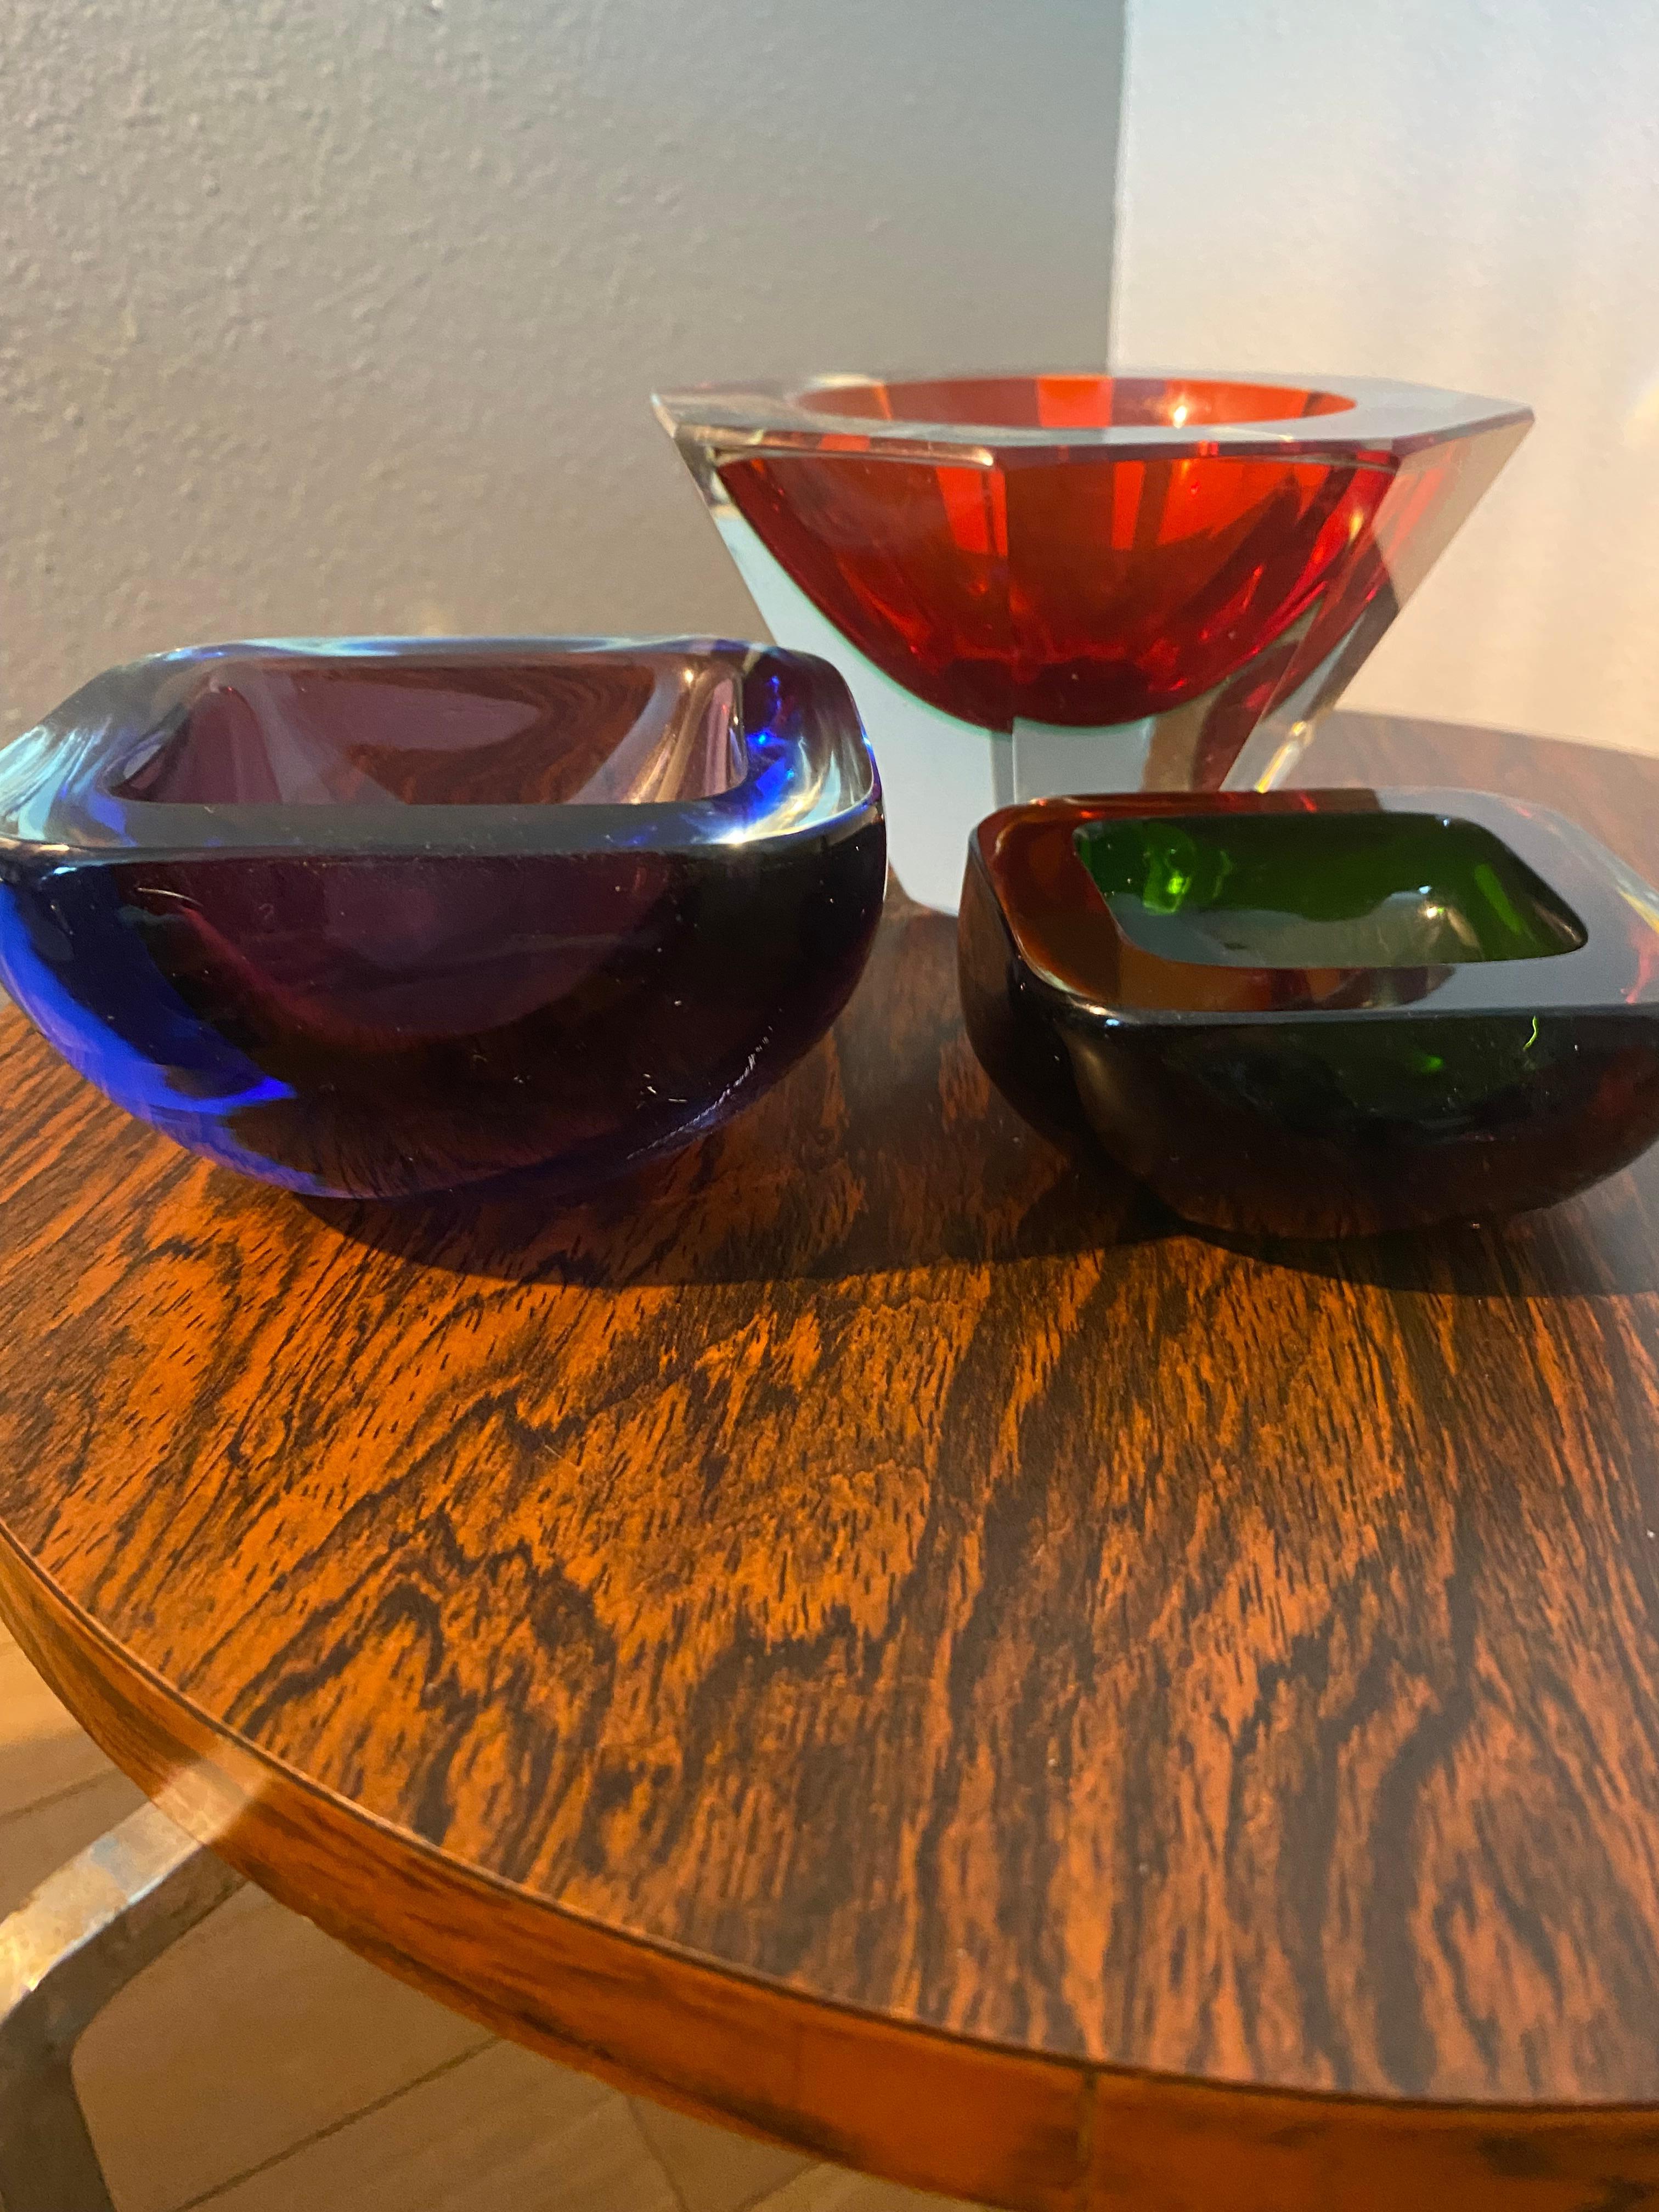 Magnifiques bols en verre de Murano datant du milieu du siècle dernier. Réalisé selon la technique du verre Sommerso (immergé).
Dimensions de deux petits bols :
Bol bleu violet : 10x10x5
Bol orange brun : 8x8x3.5